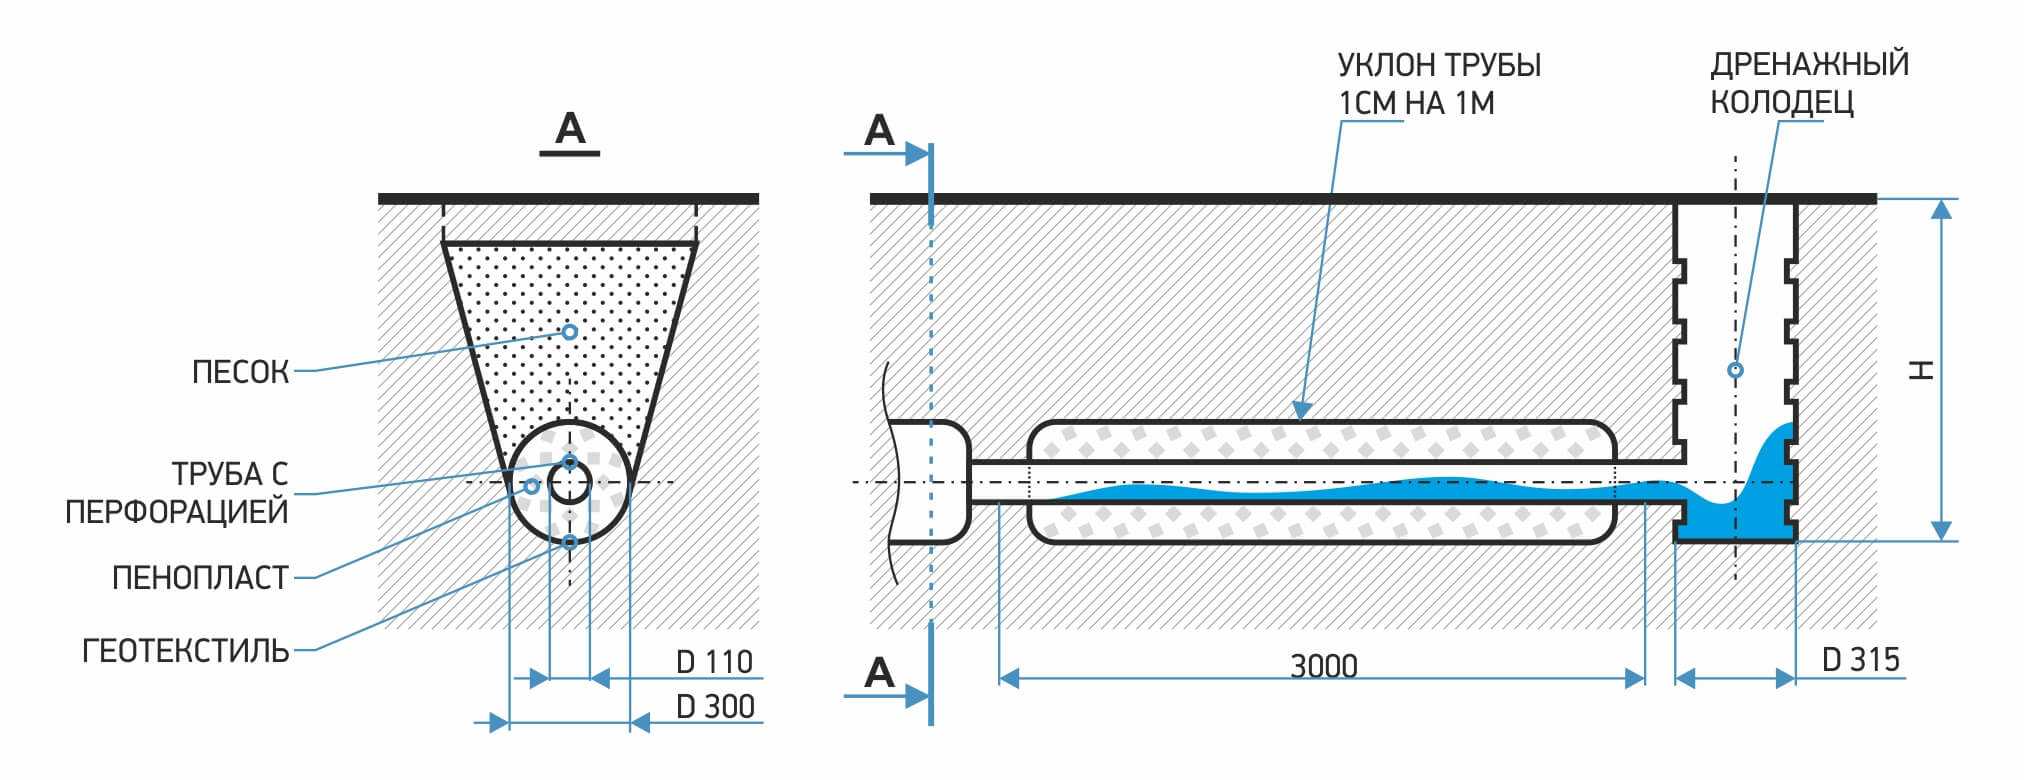 Уклон водосточного желоба: расчет оптимальной величины и монтаж под правильным углом